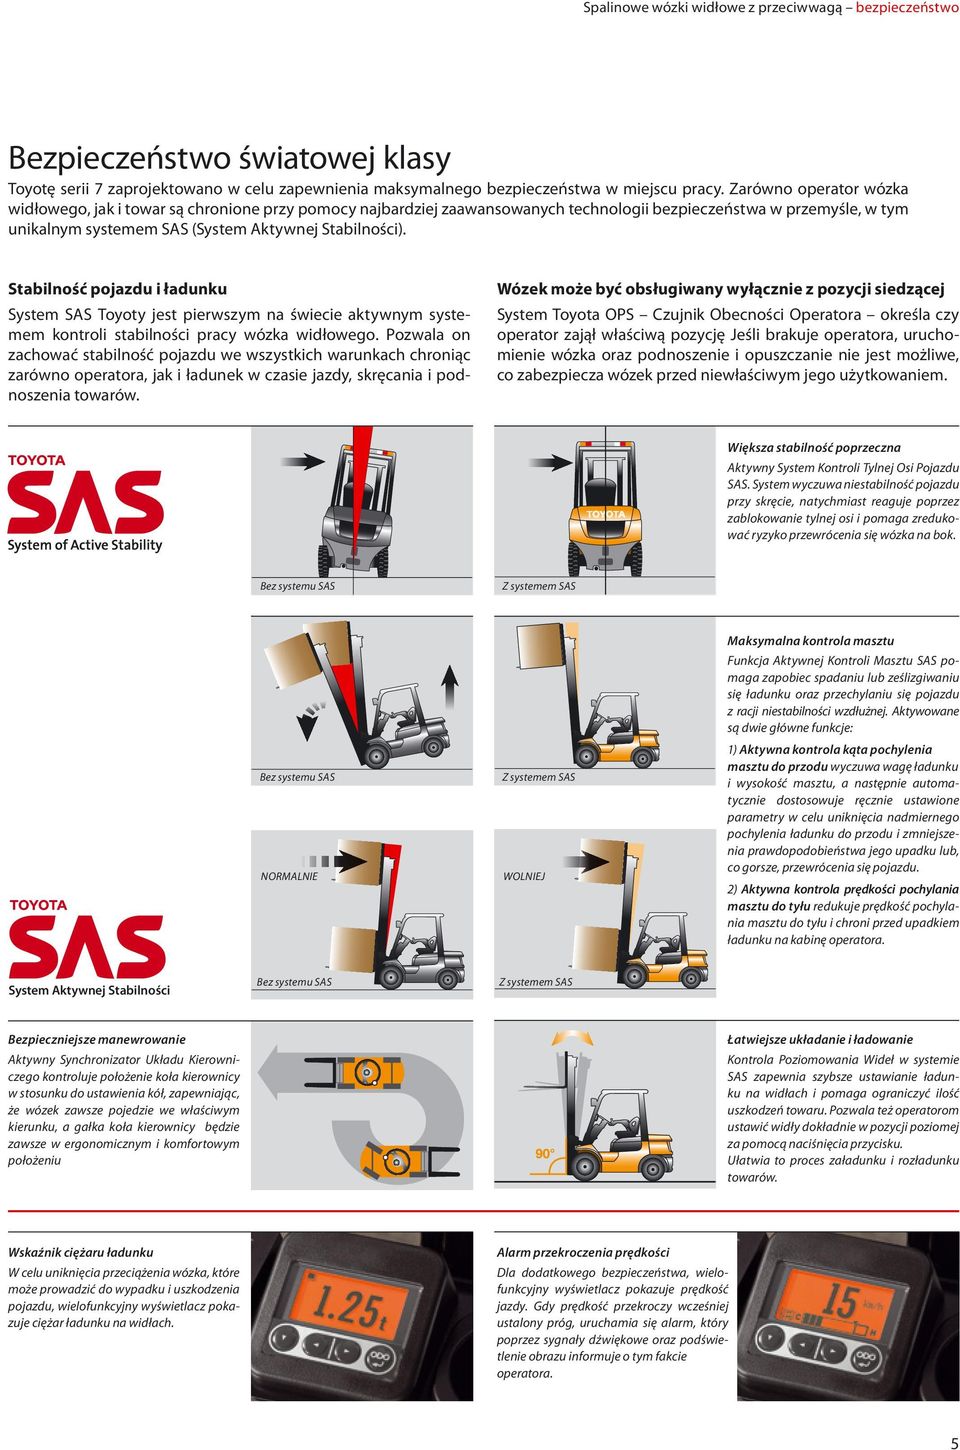 Stabilność pojazdu i ładunku System SAS Toyoty jest pierwszym na świecie aktywnym systemem kontroli stabilności pracy wózka widłowego.